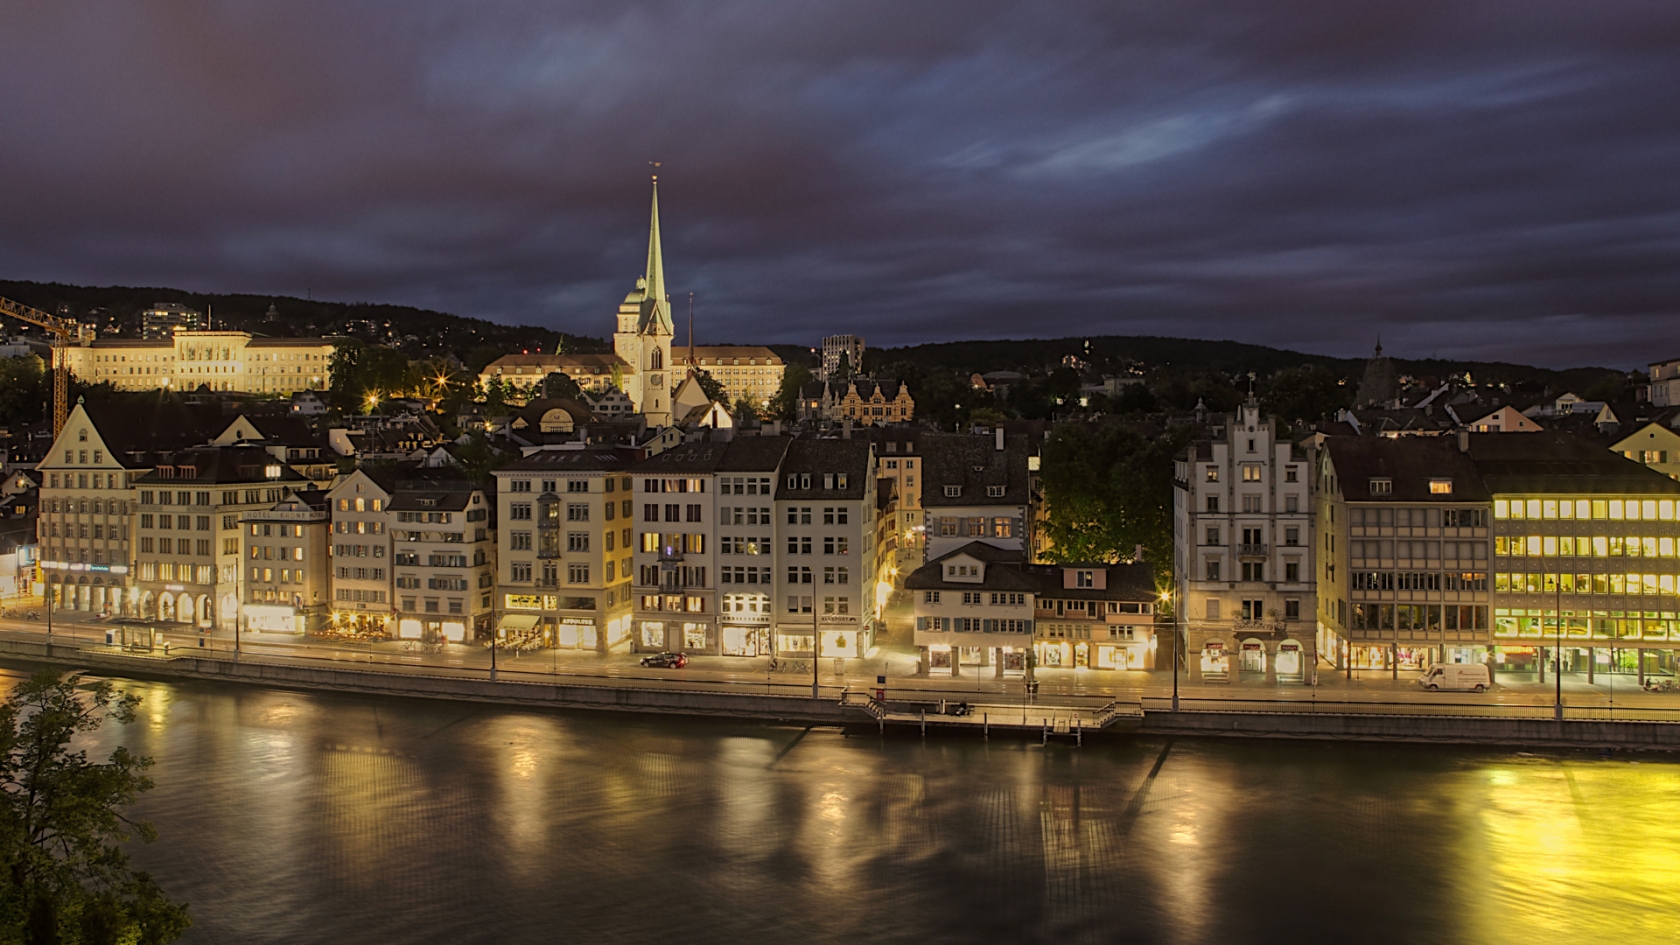 Zurich City for 1680 x 945 HDTV resolution